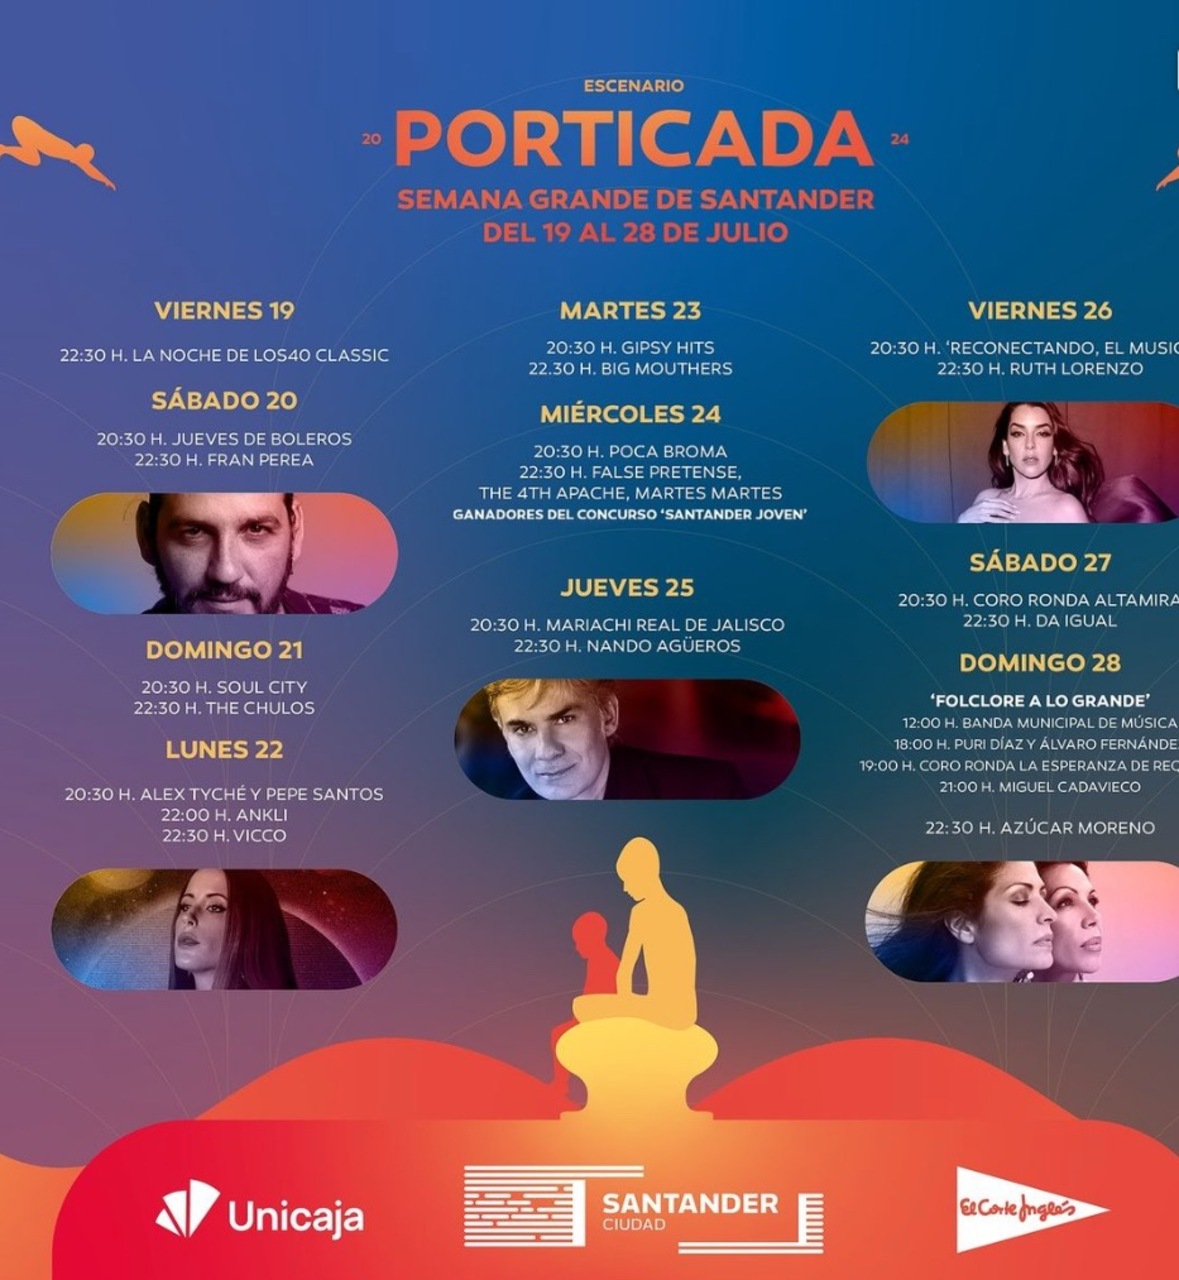 Escenario Porticada: Coro Ronda Altamira y concierto de Da Igual